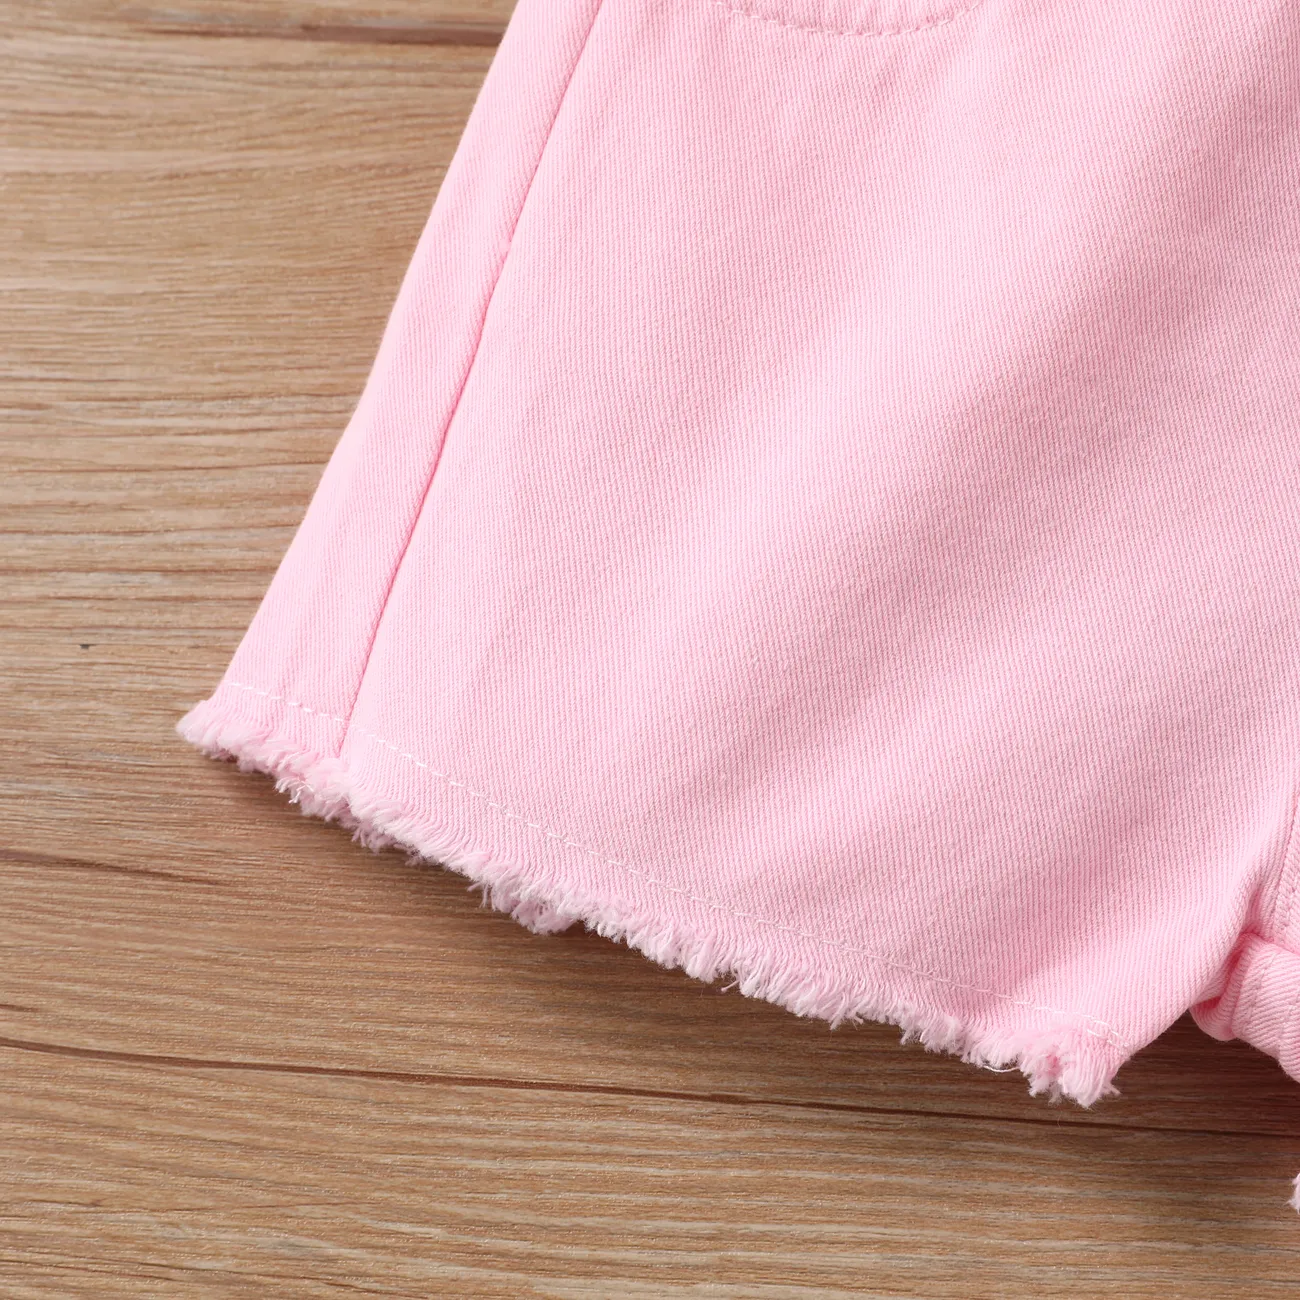 Toddler Girl Cotton Shorts Basic Solid Color Regular Shorts  Pink big image 1